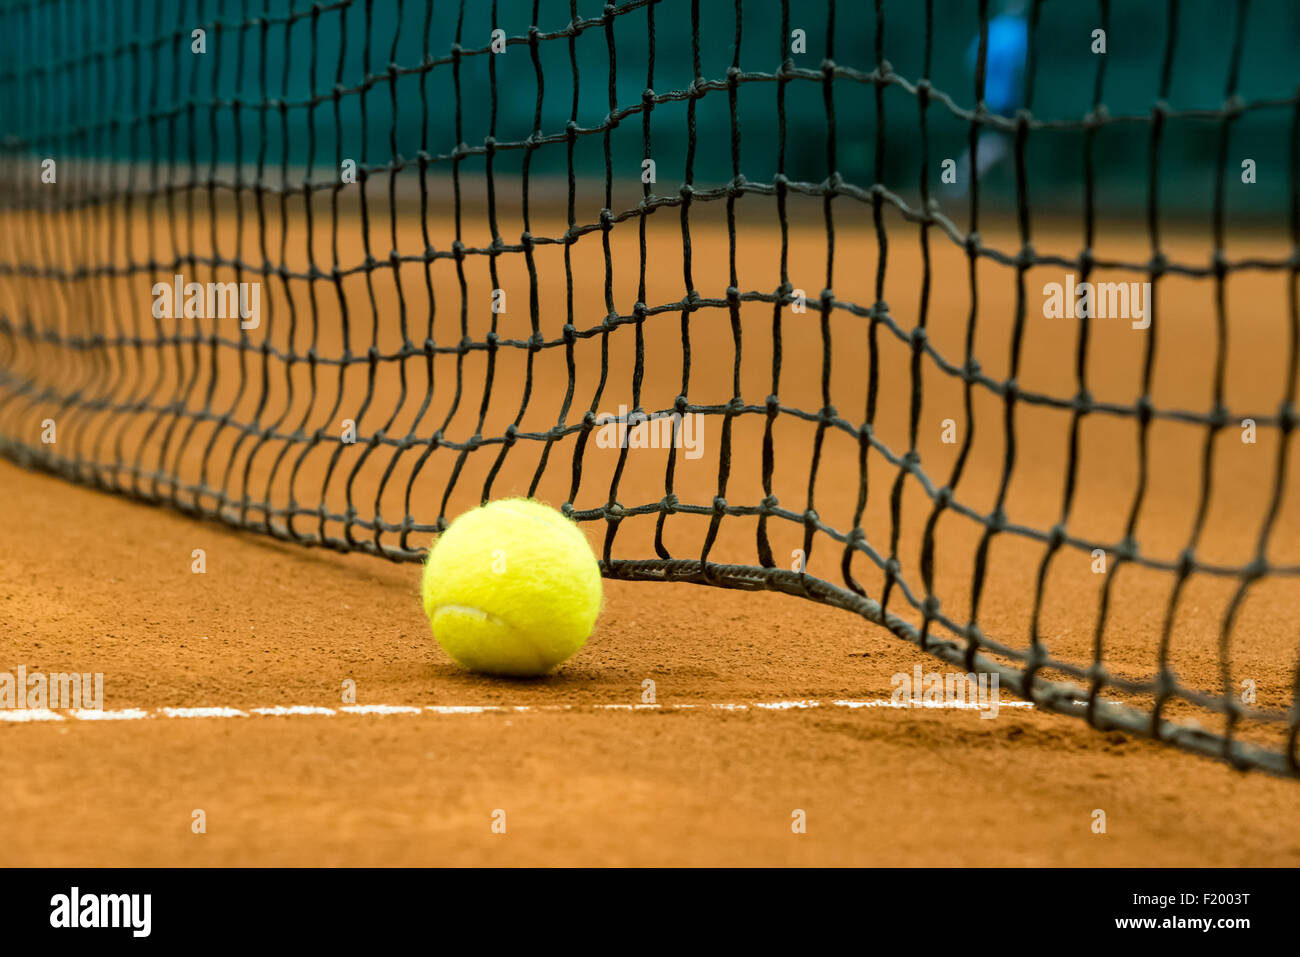 Amarillo pelota de tenis en una cancha de arcilla roja Foto de stock